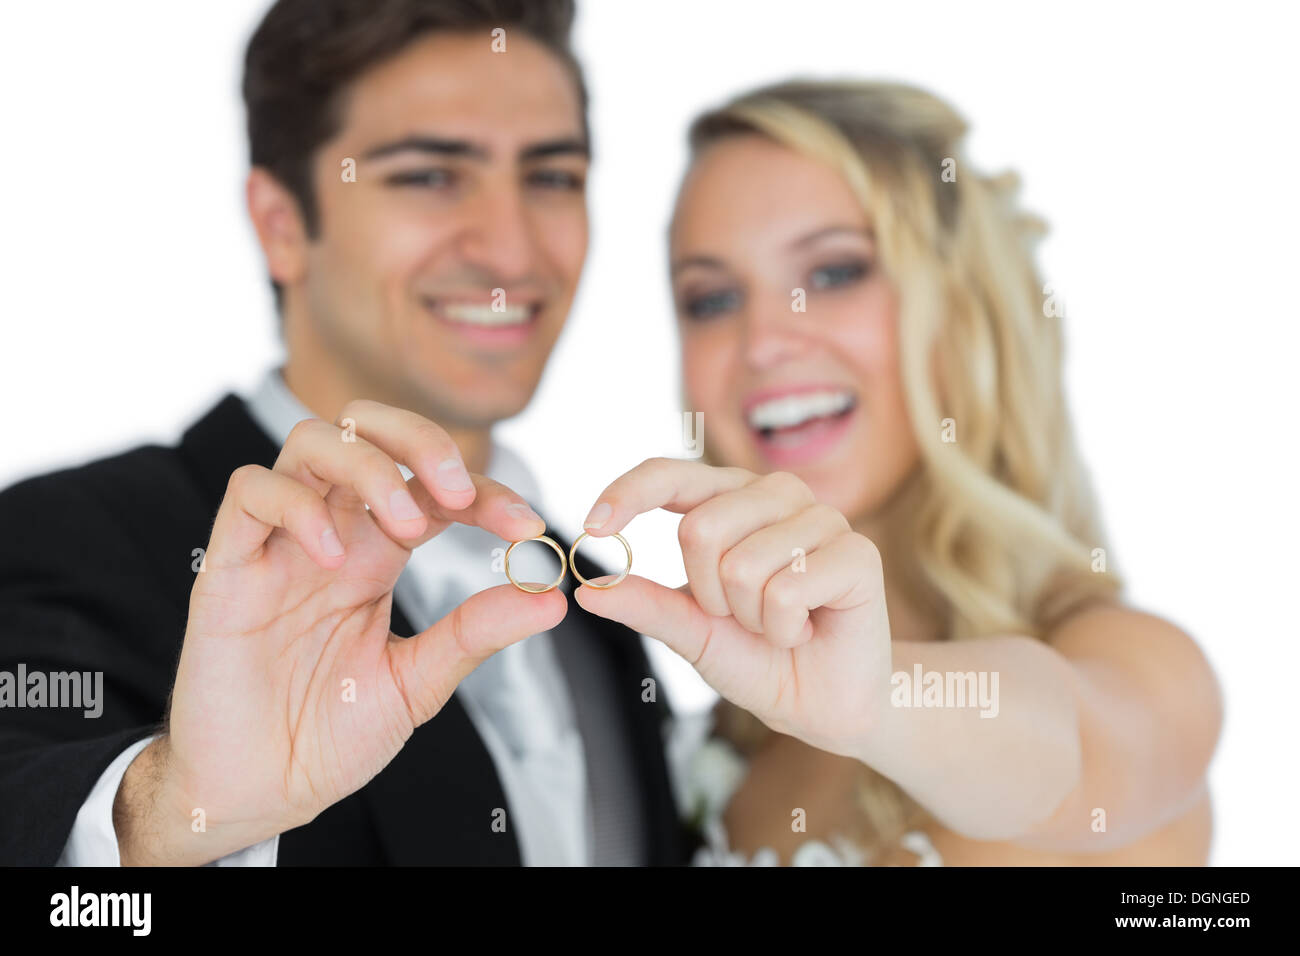 Cheerful couple marié montrant leurs anneaux de mariage Banque D'Images